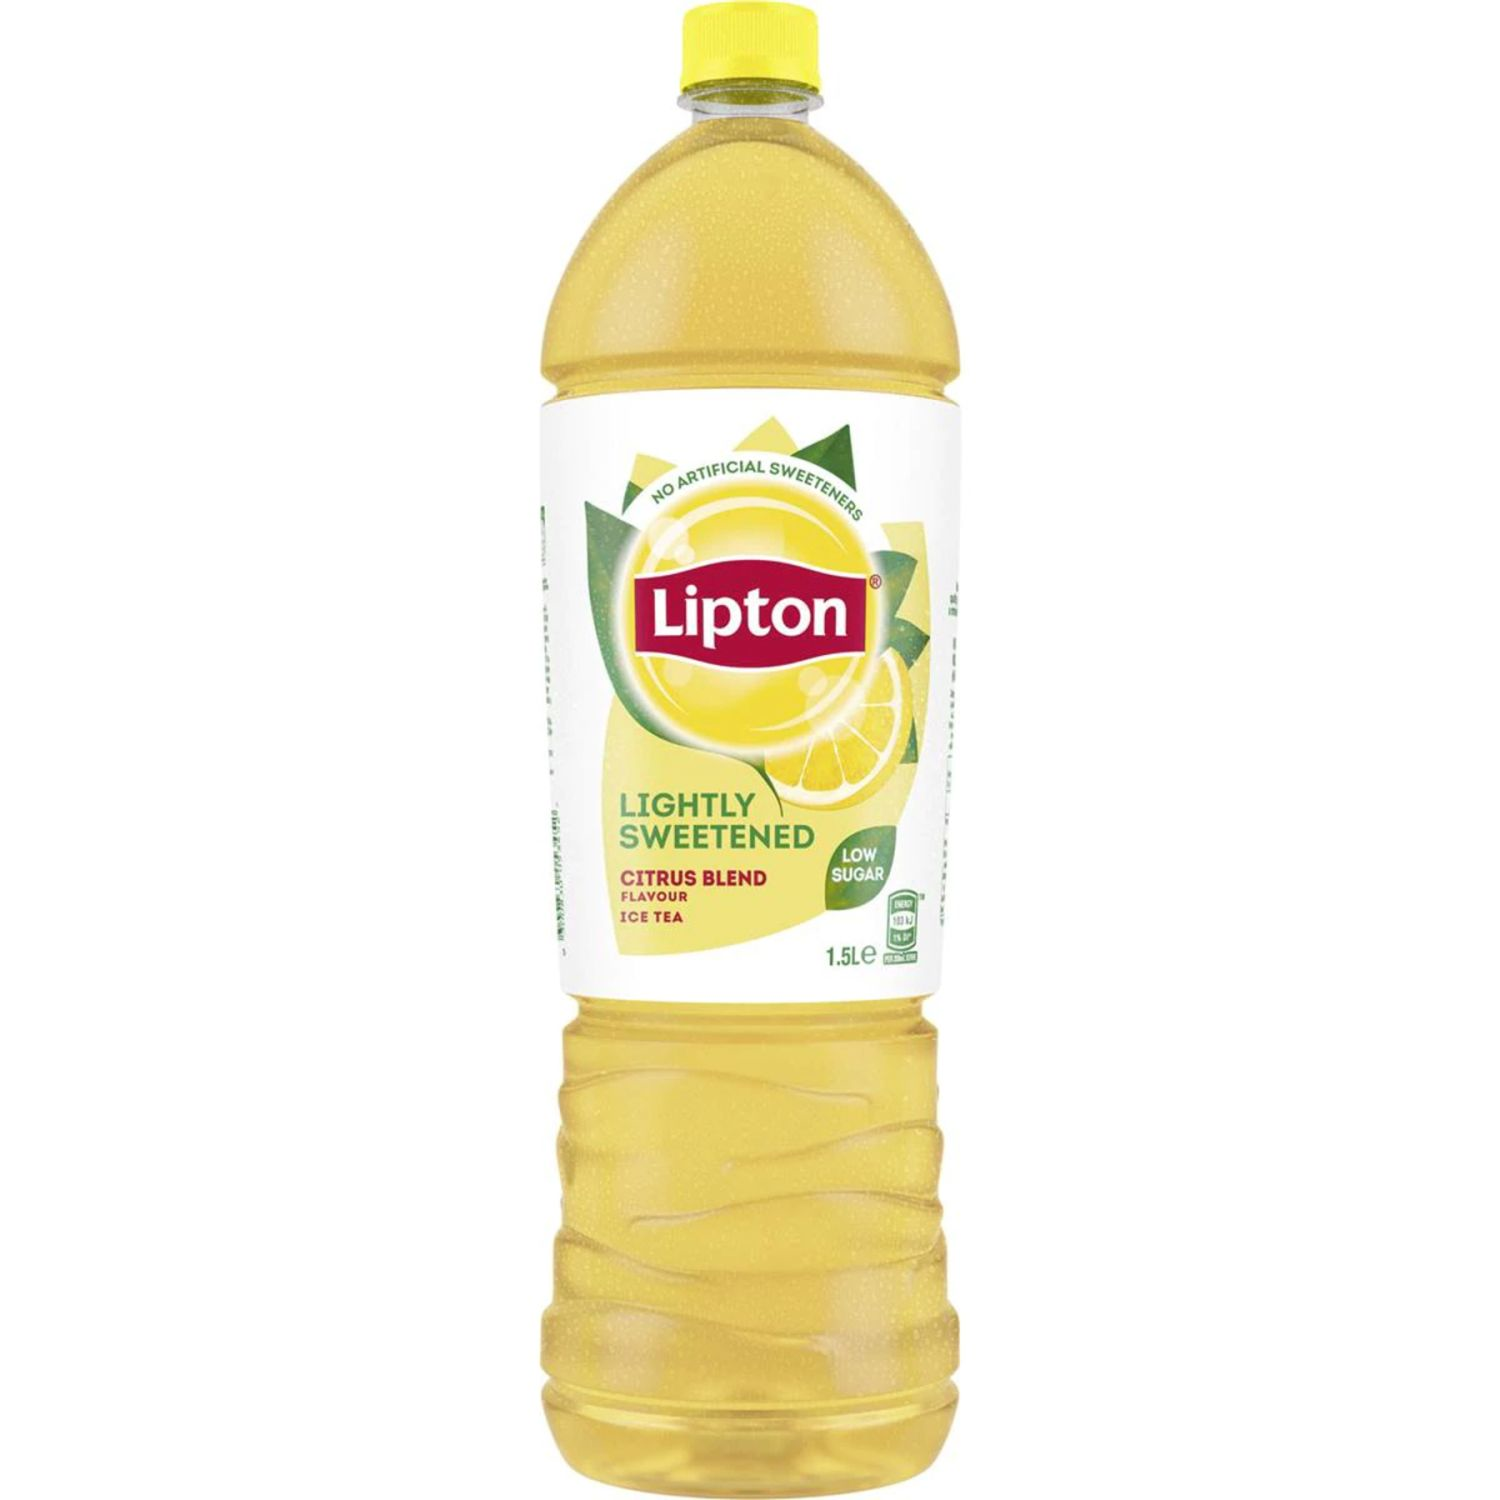 Lipton Lightly Sweetened Citrus Blend, 1.5 Litre